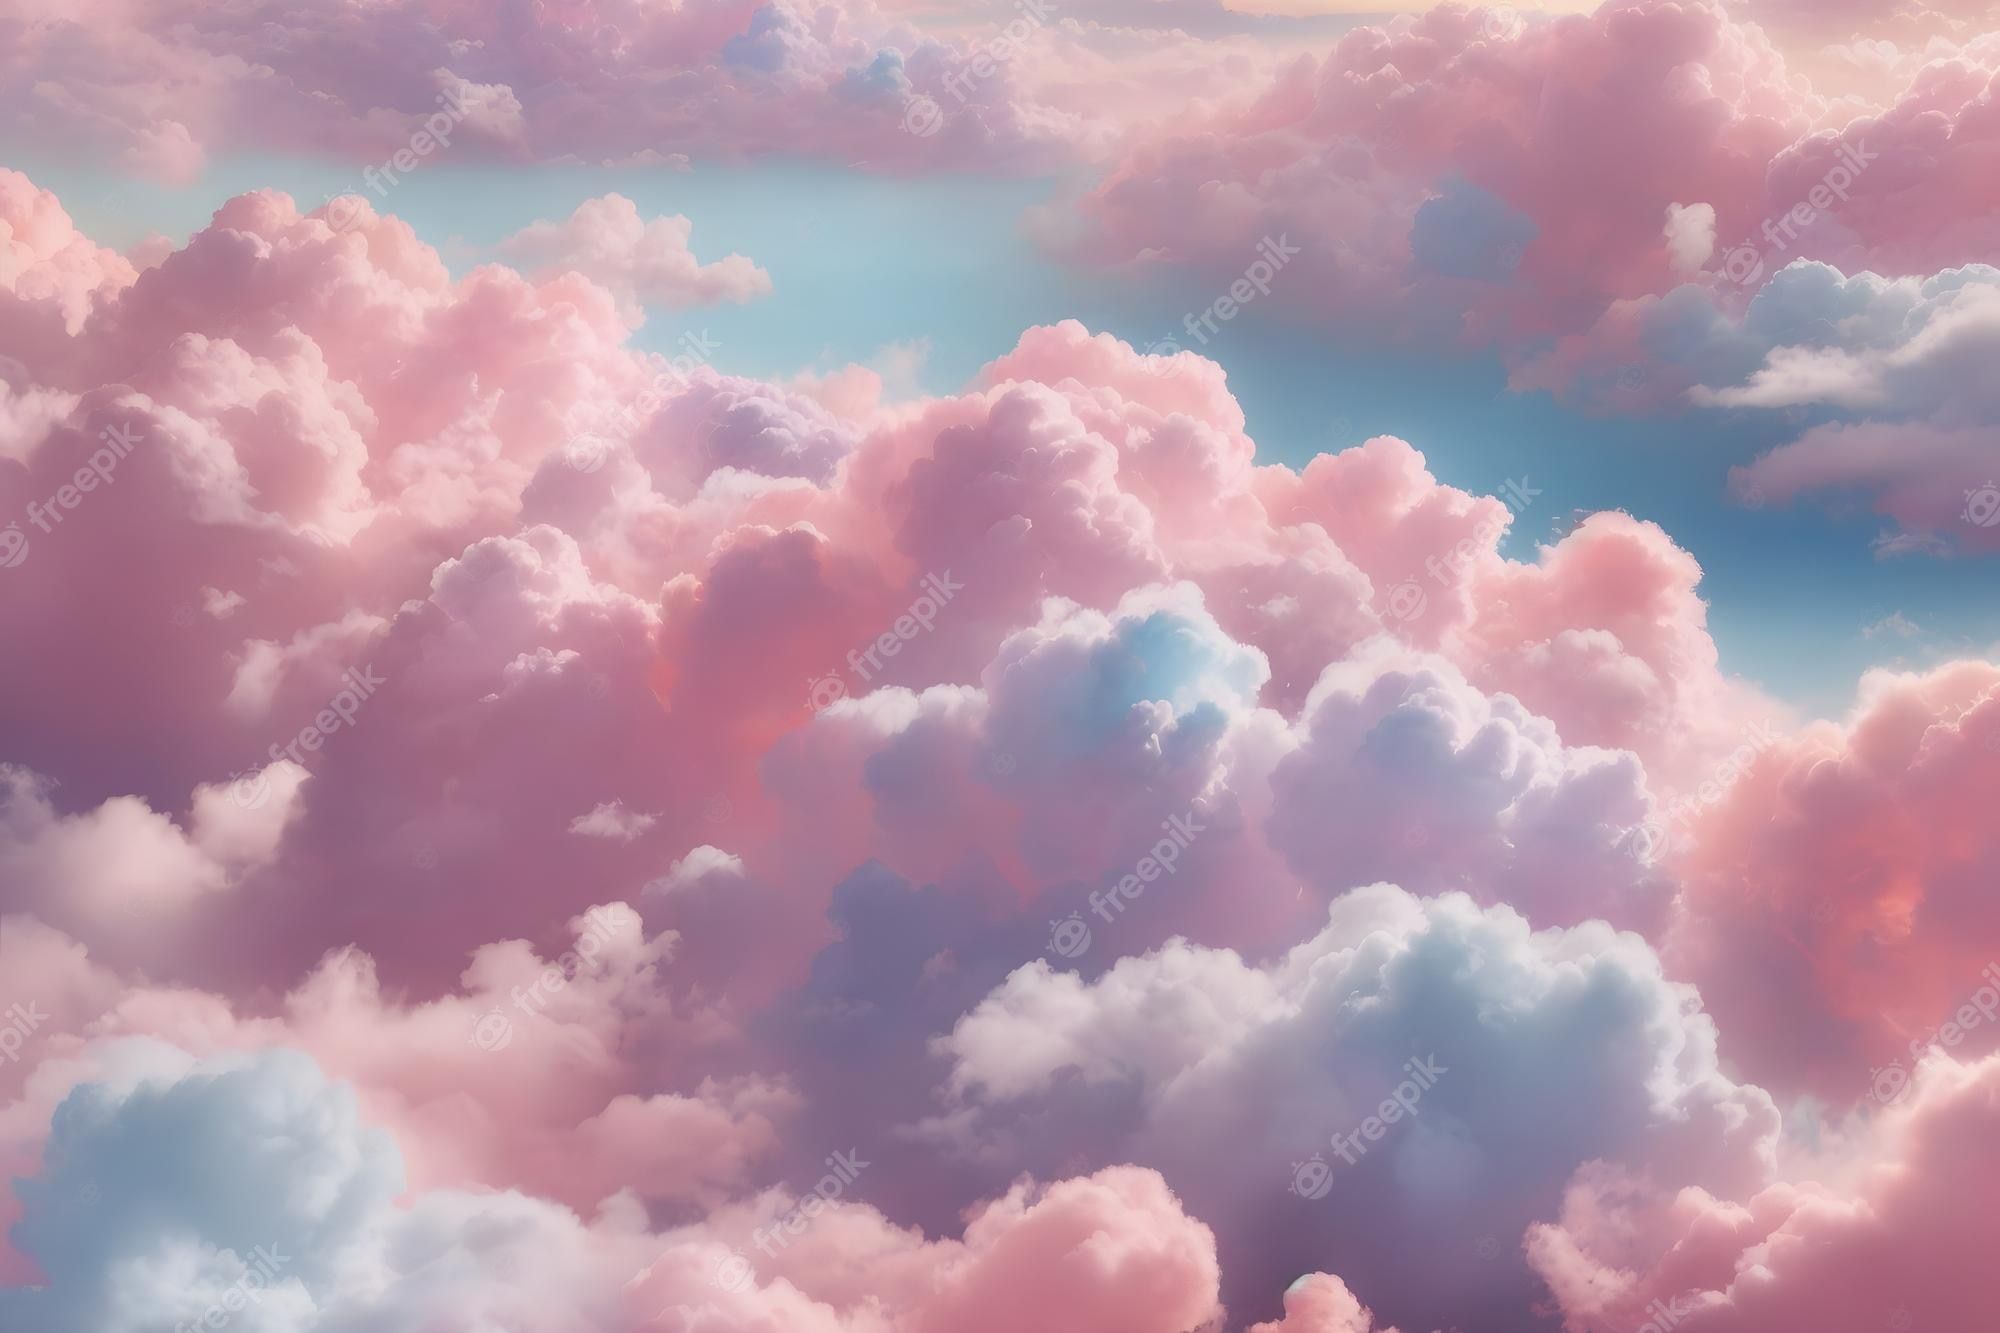 Cloud Wallpaper Image